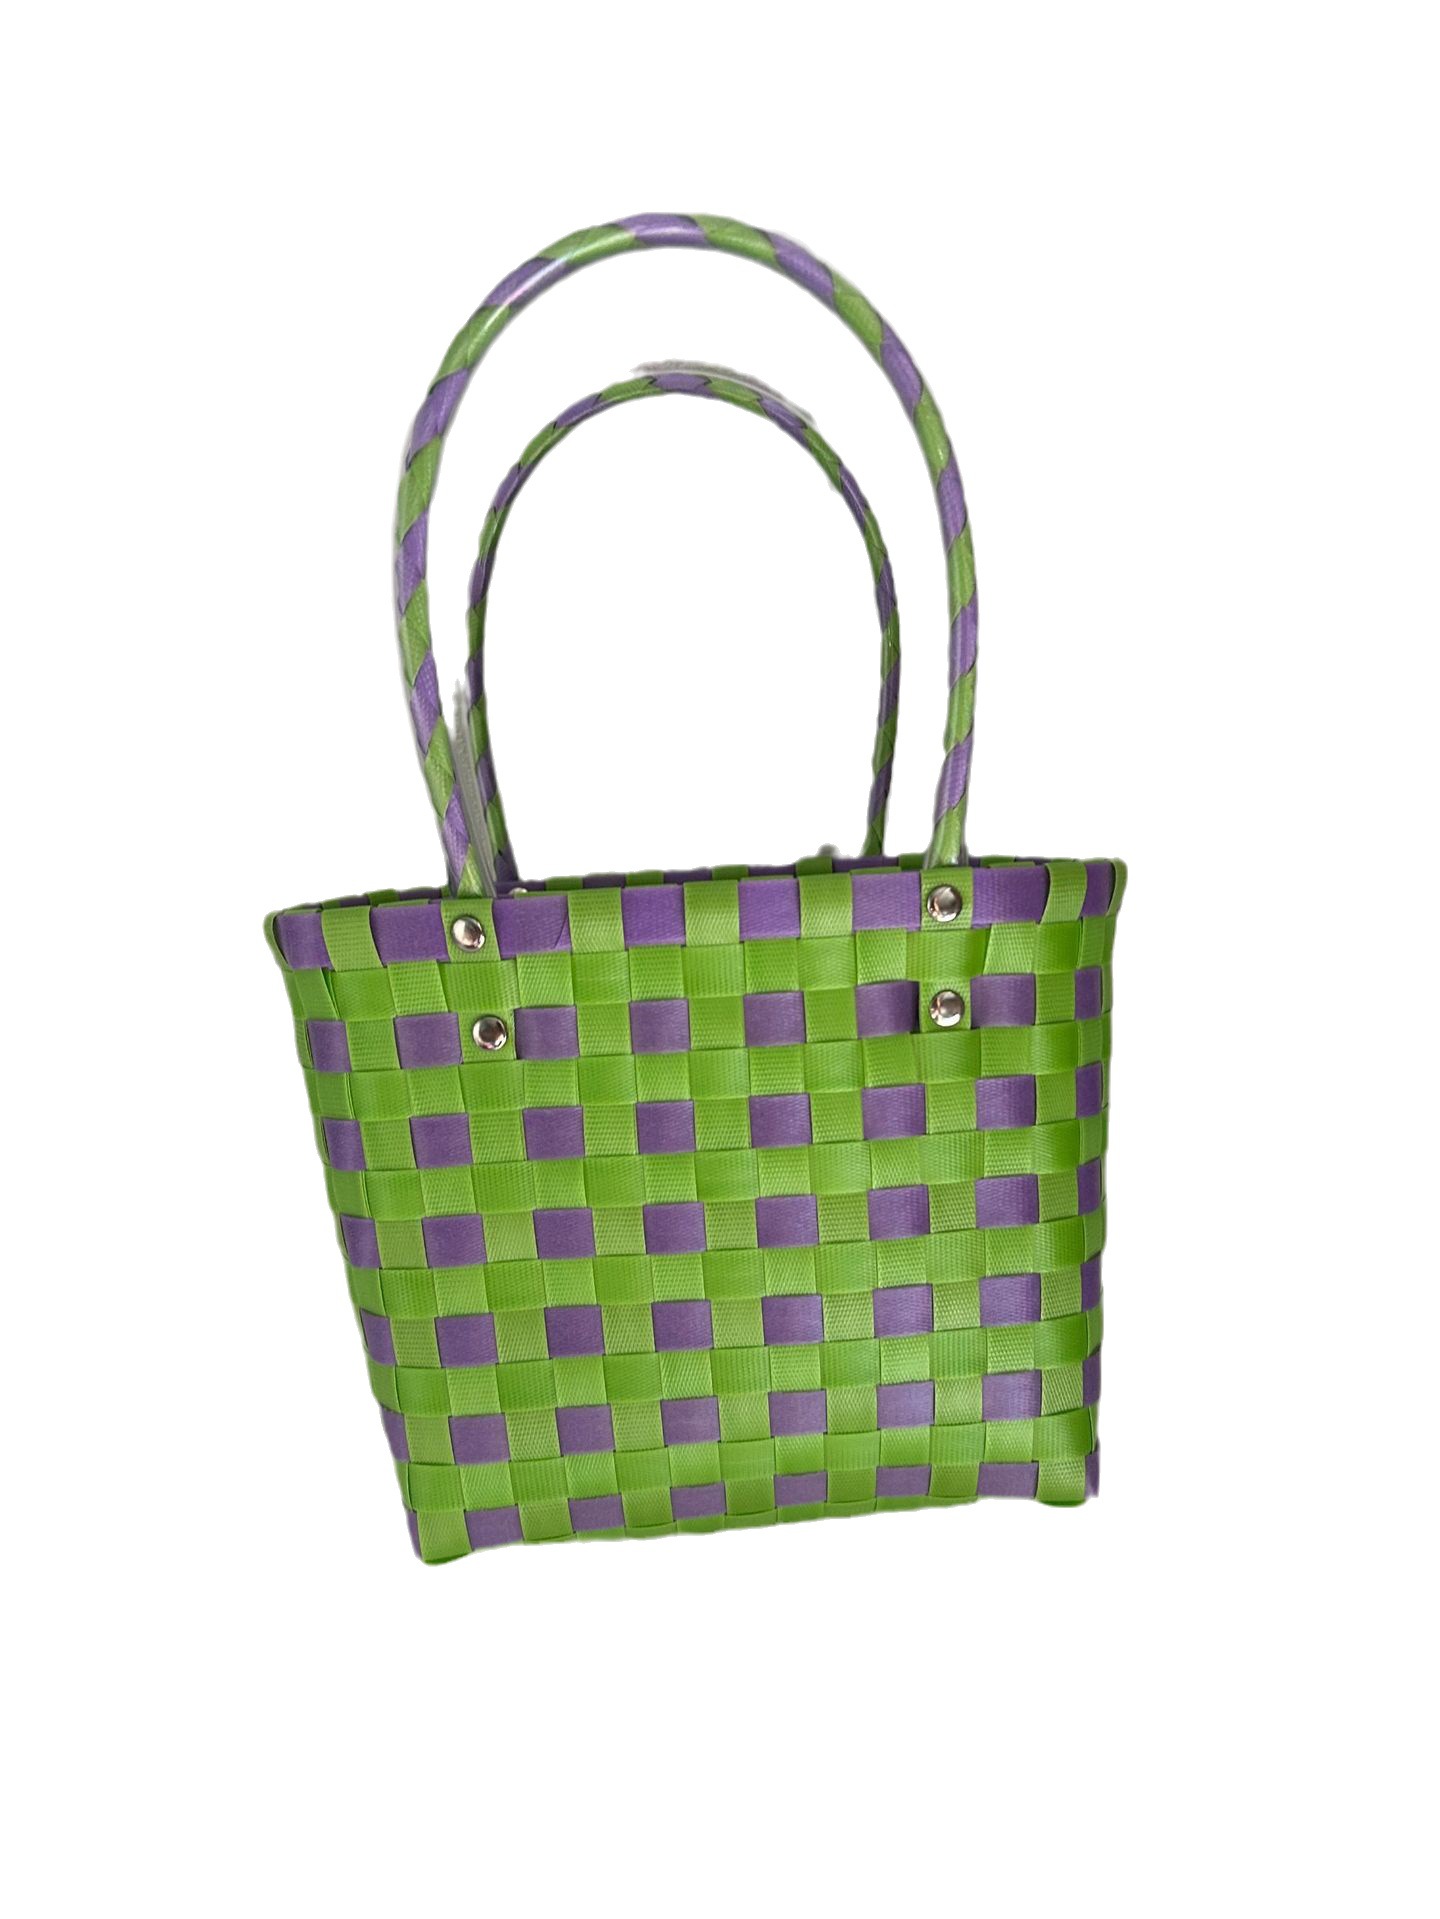 Simple Grid Woven Bag Pastoral Portable Storage Large Capacity Handbag Vegetable Basket Shoulder Bag with Gift Small Basket